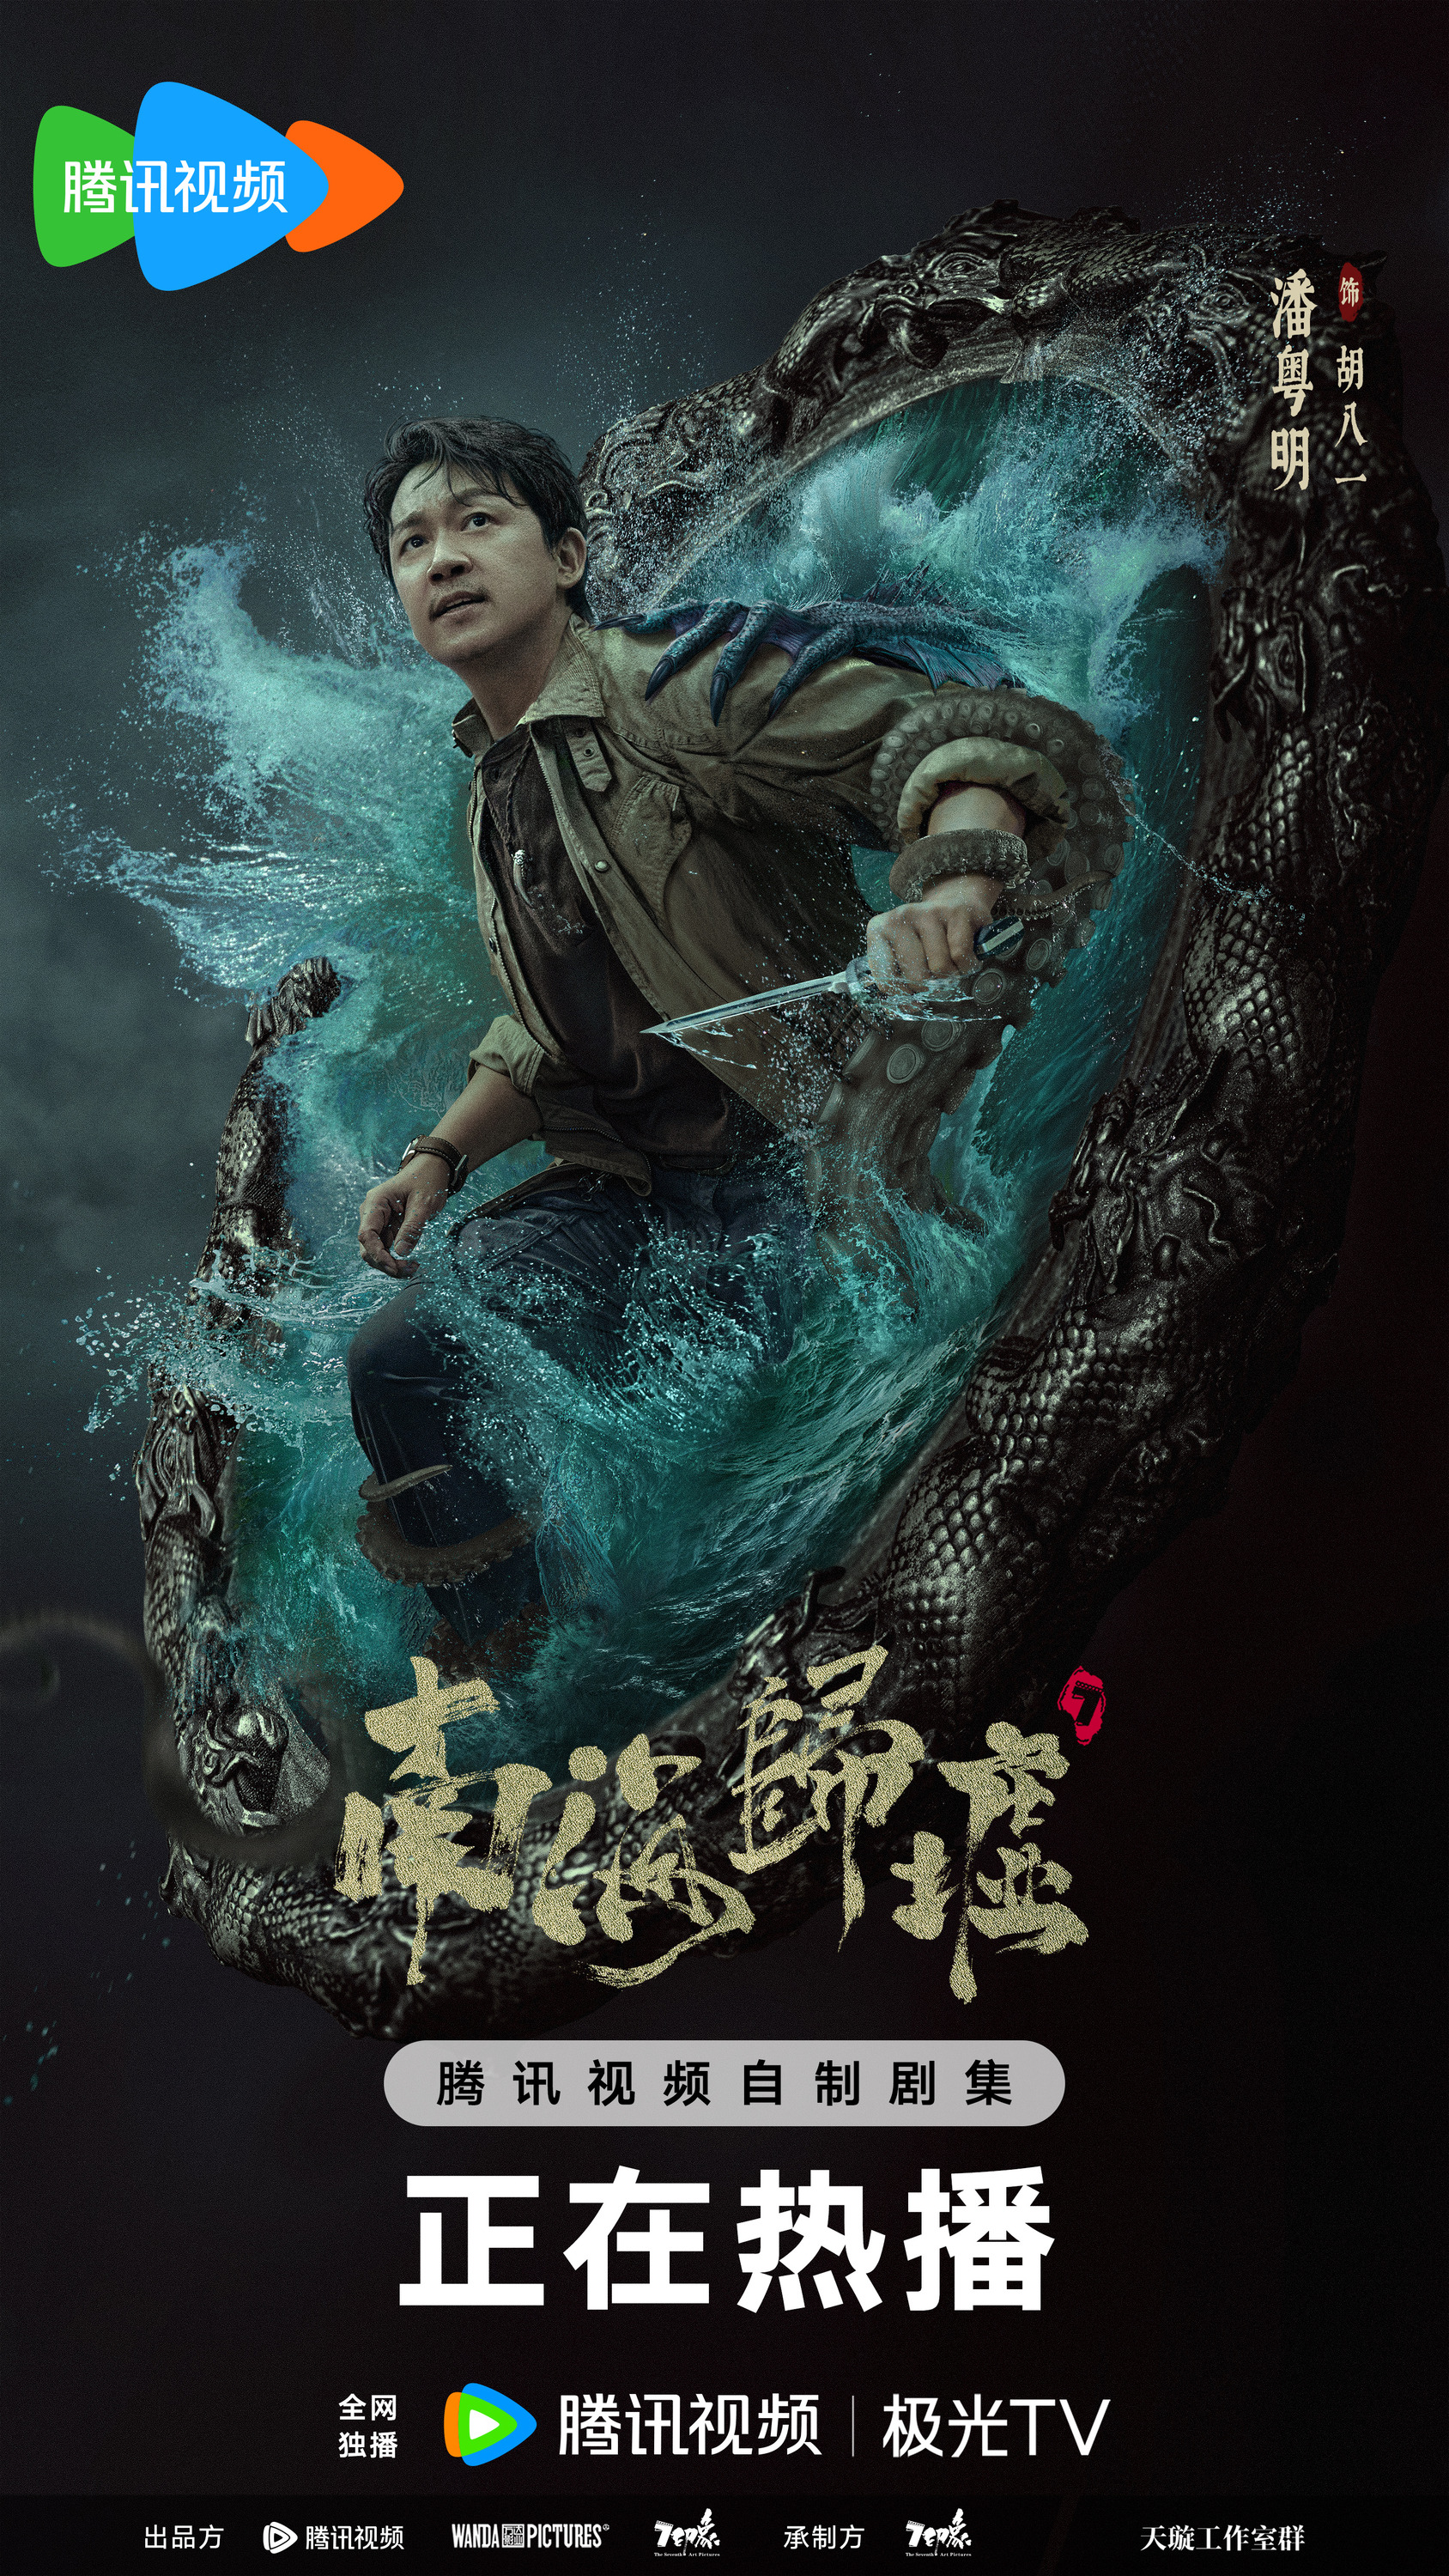 Mega Sized TV Poster Image for Nan hai gui xu (#2 of 6)